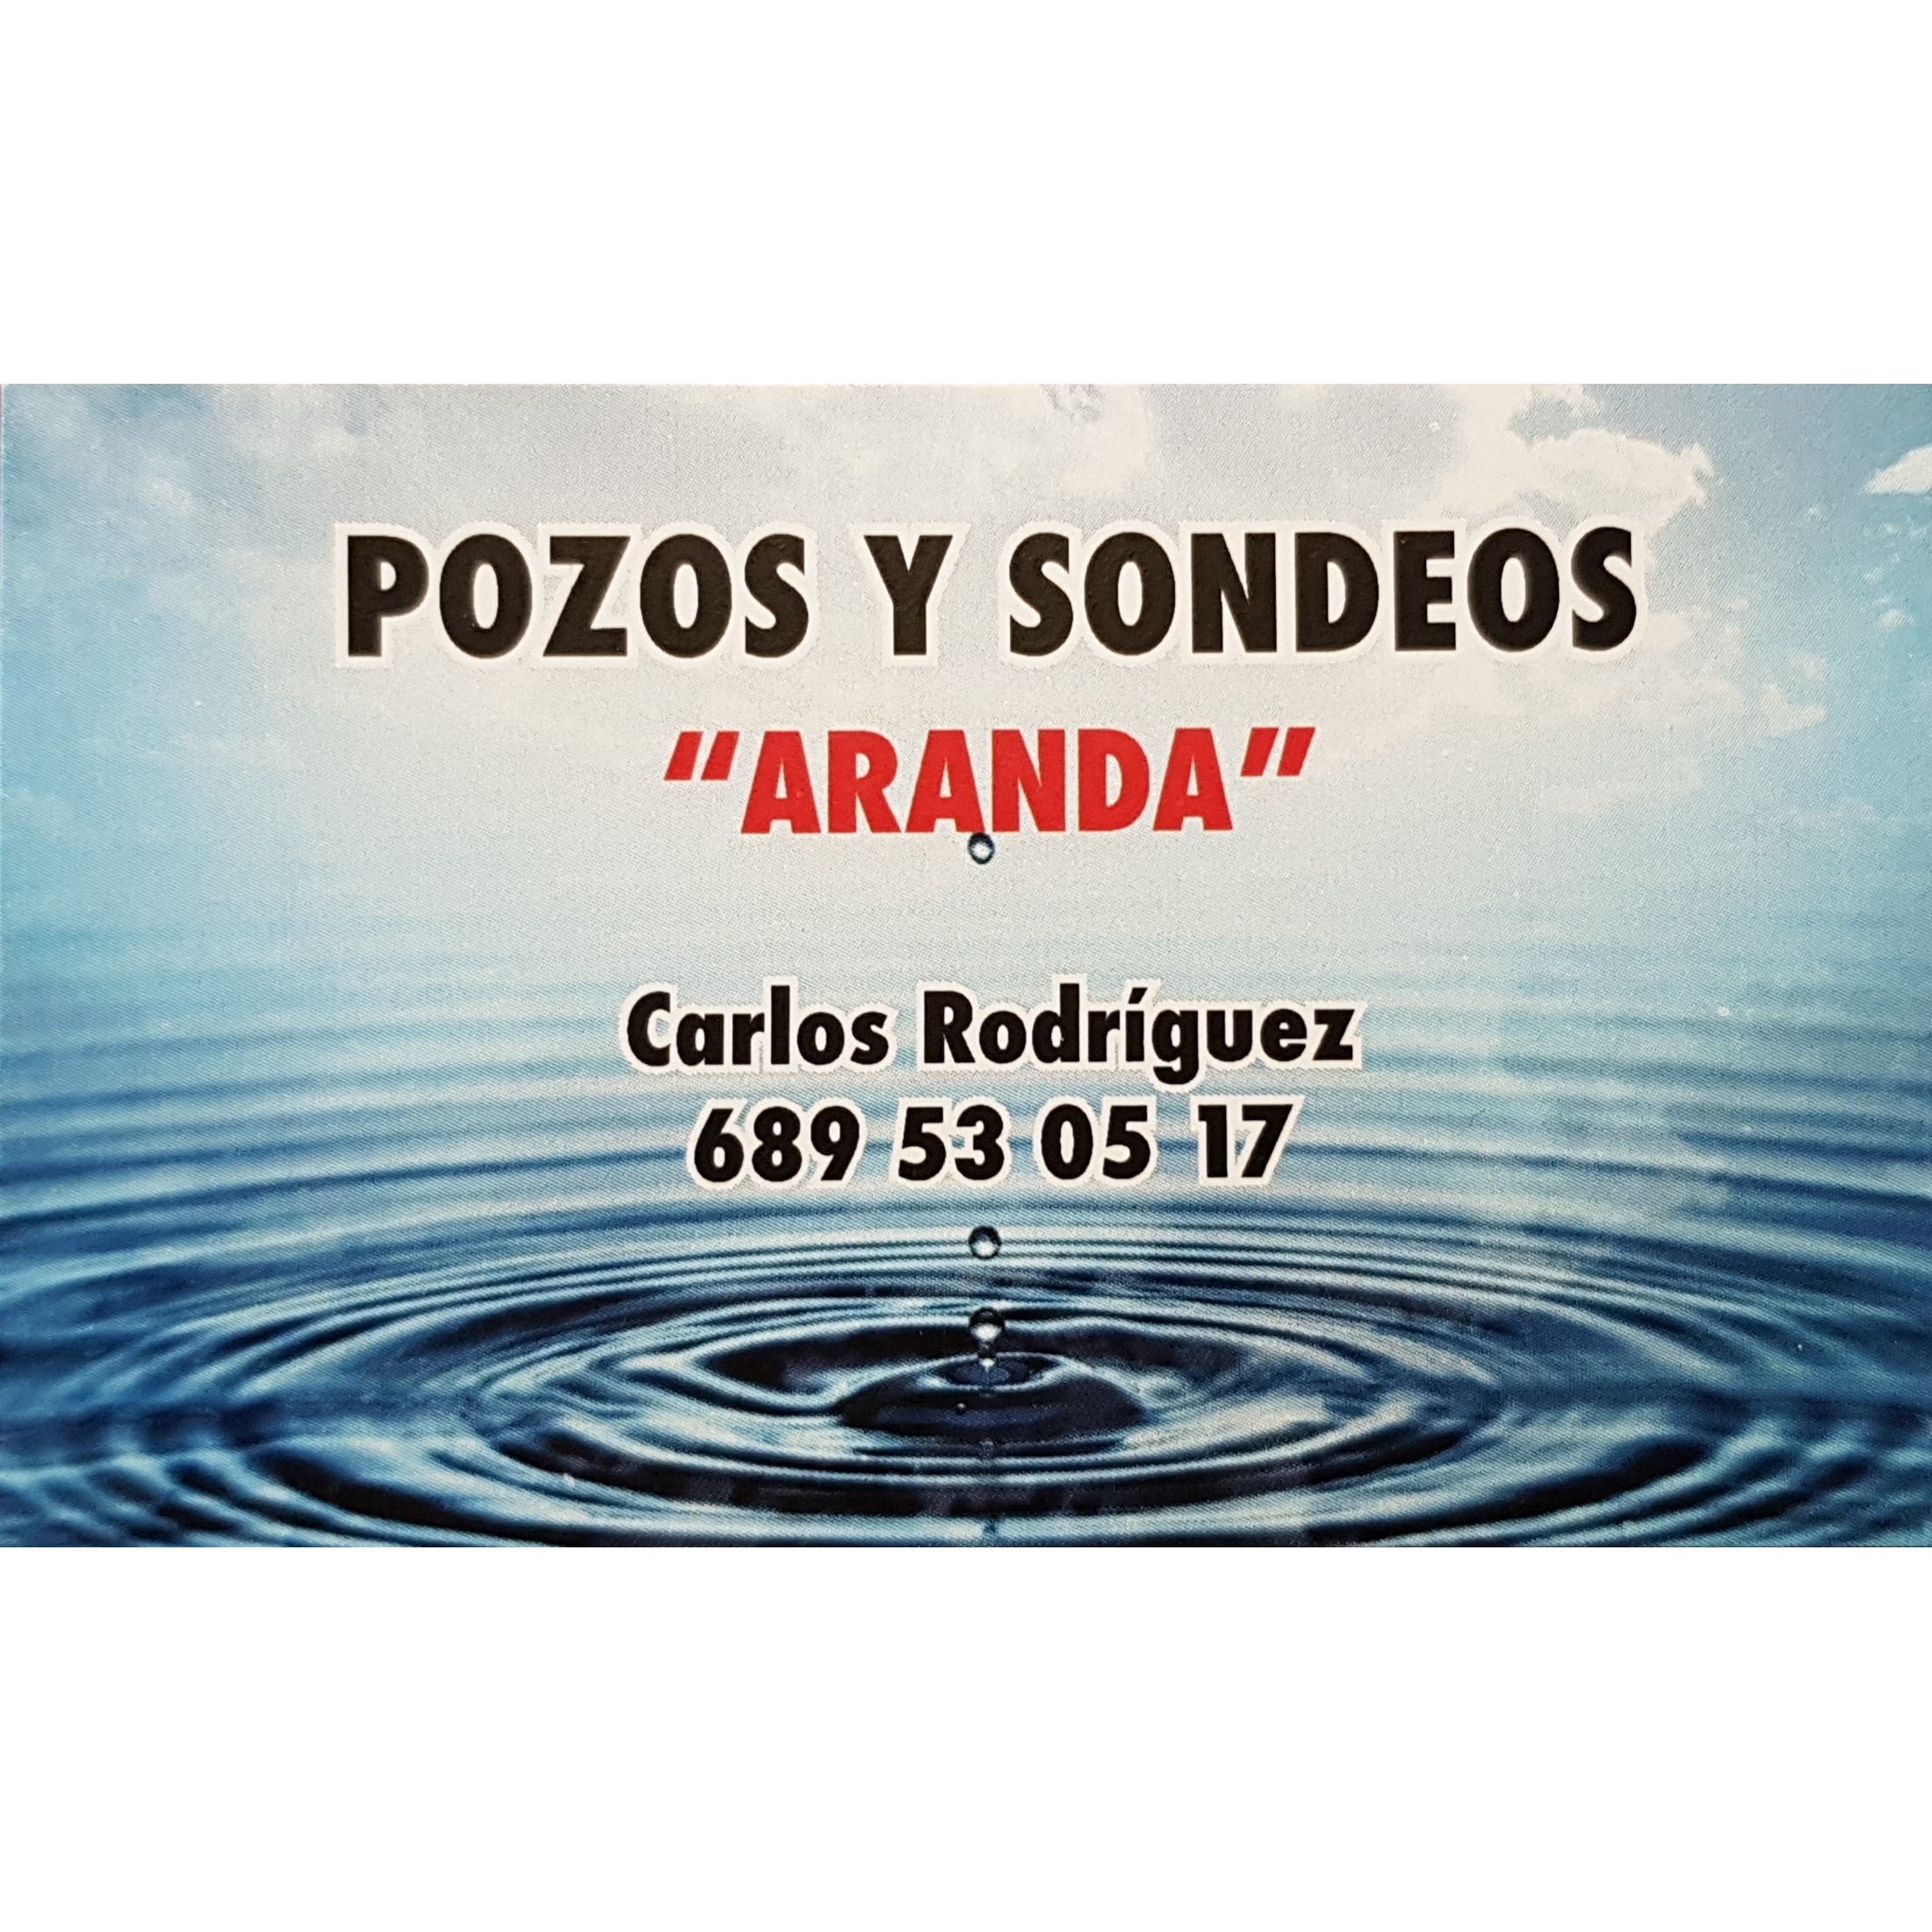 POZOS Y SONDEOS ARANDA Logo